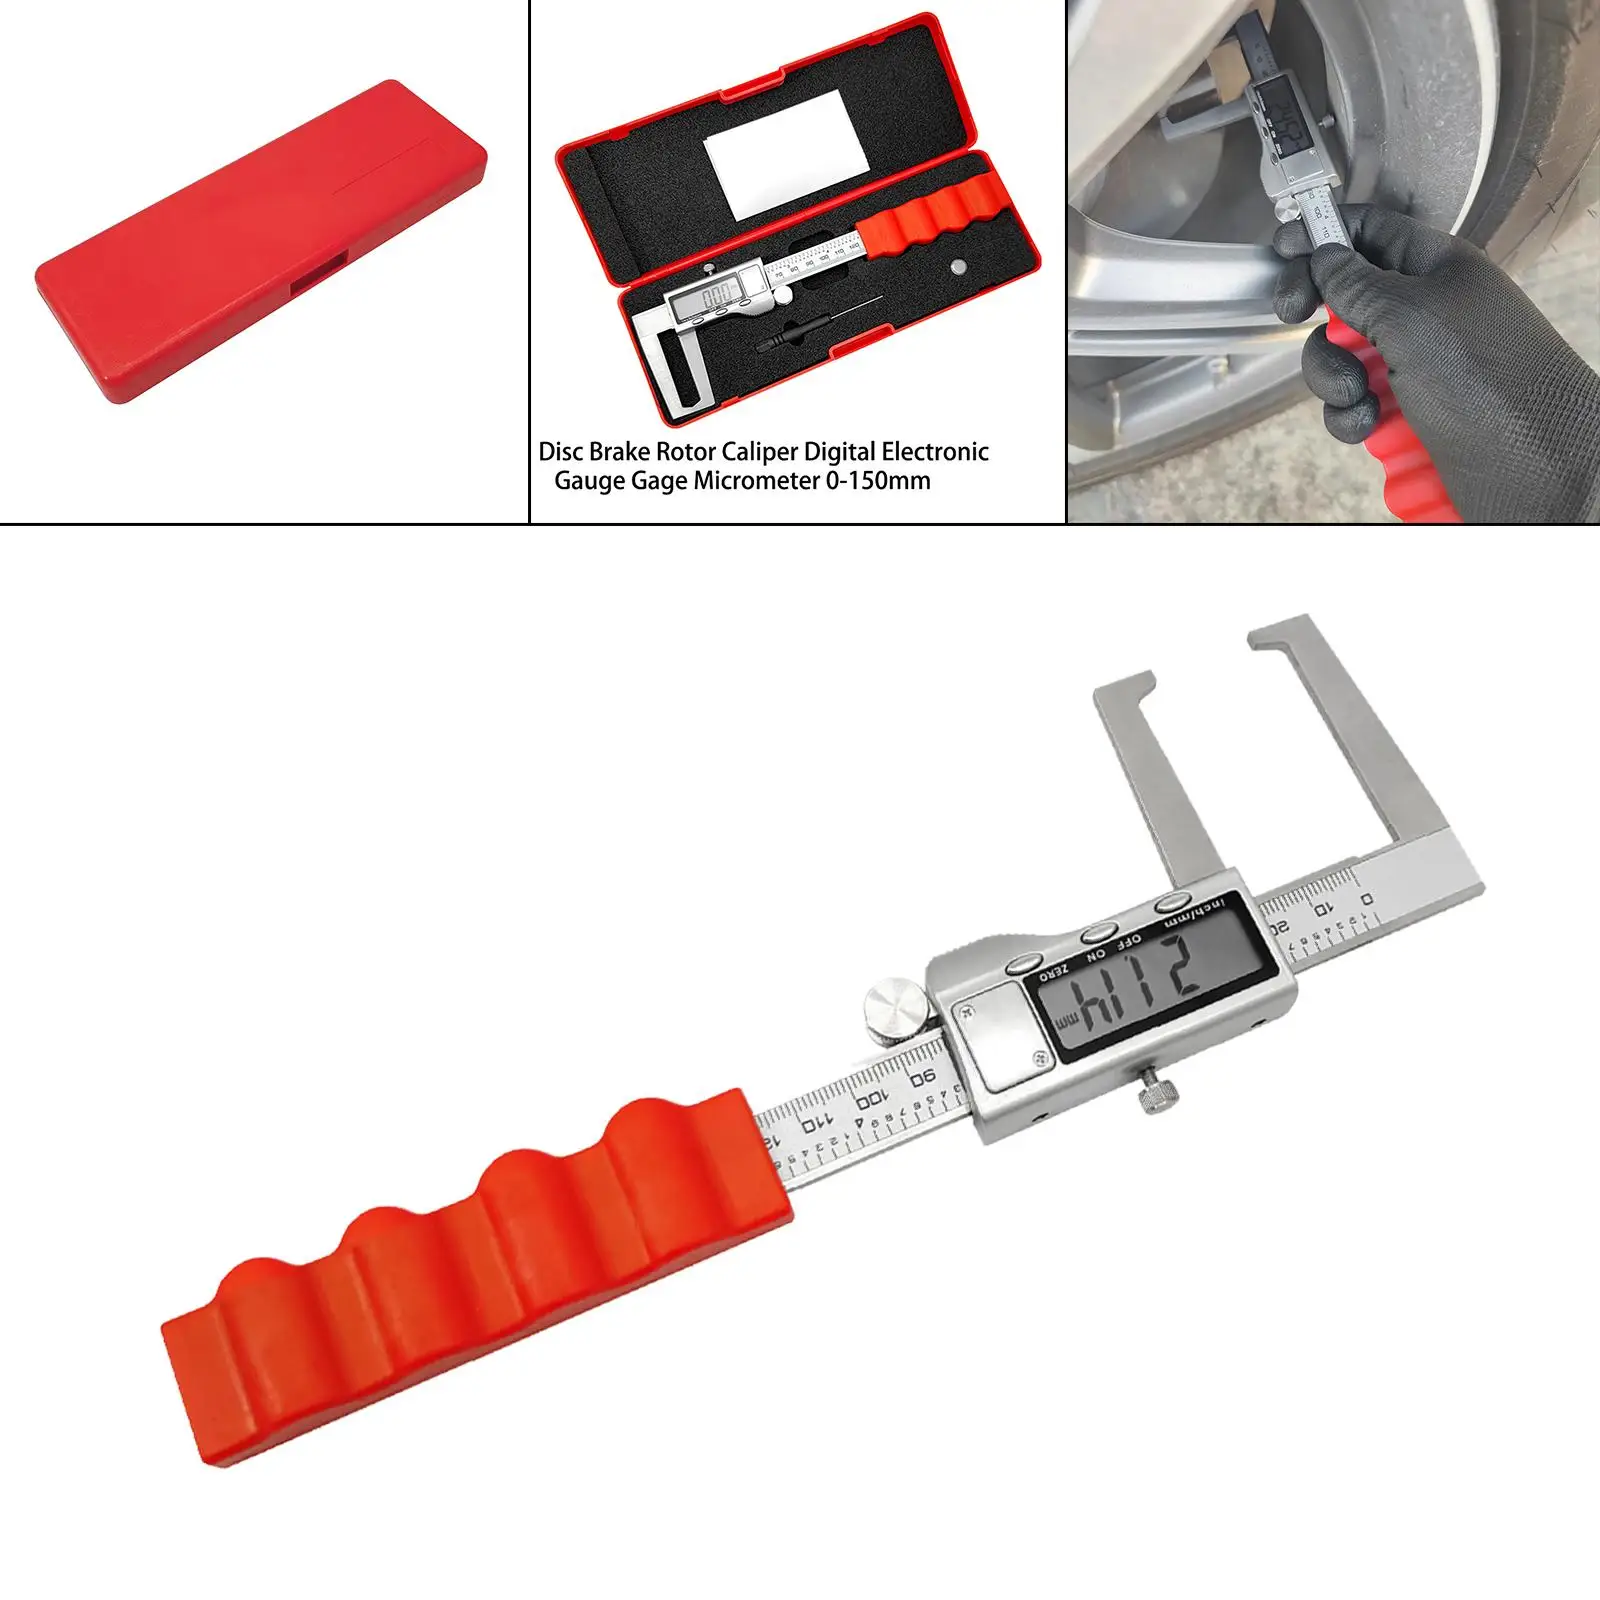 Brake Discs Calipers Digital Meter Measuring Tool Micrometer